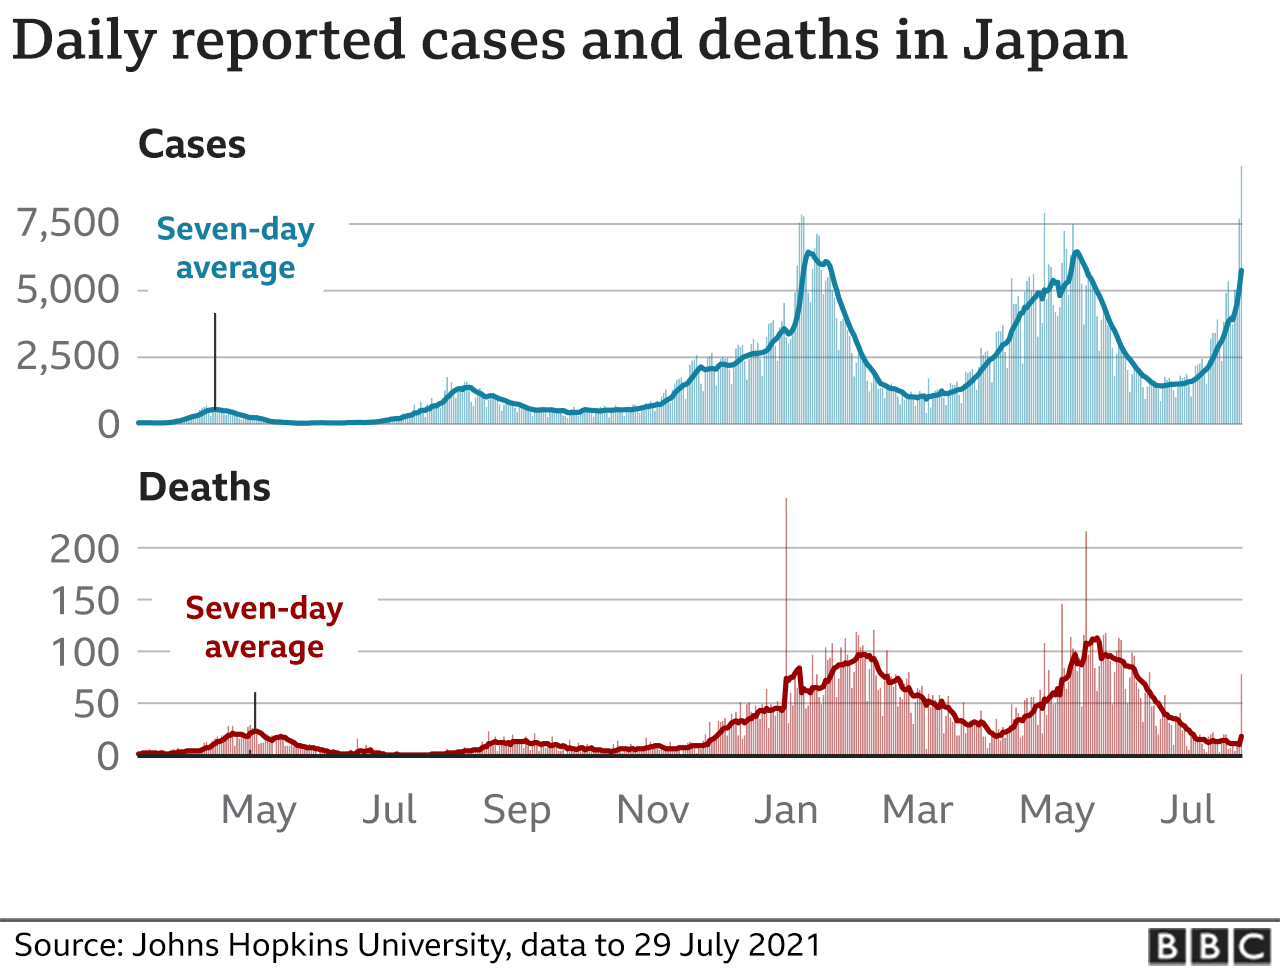 Gráfico que muestra el promedio semanal de casos y muertes en Japón